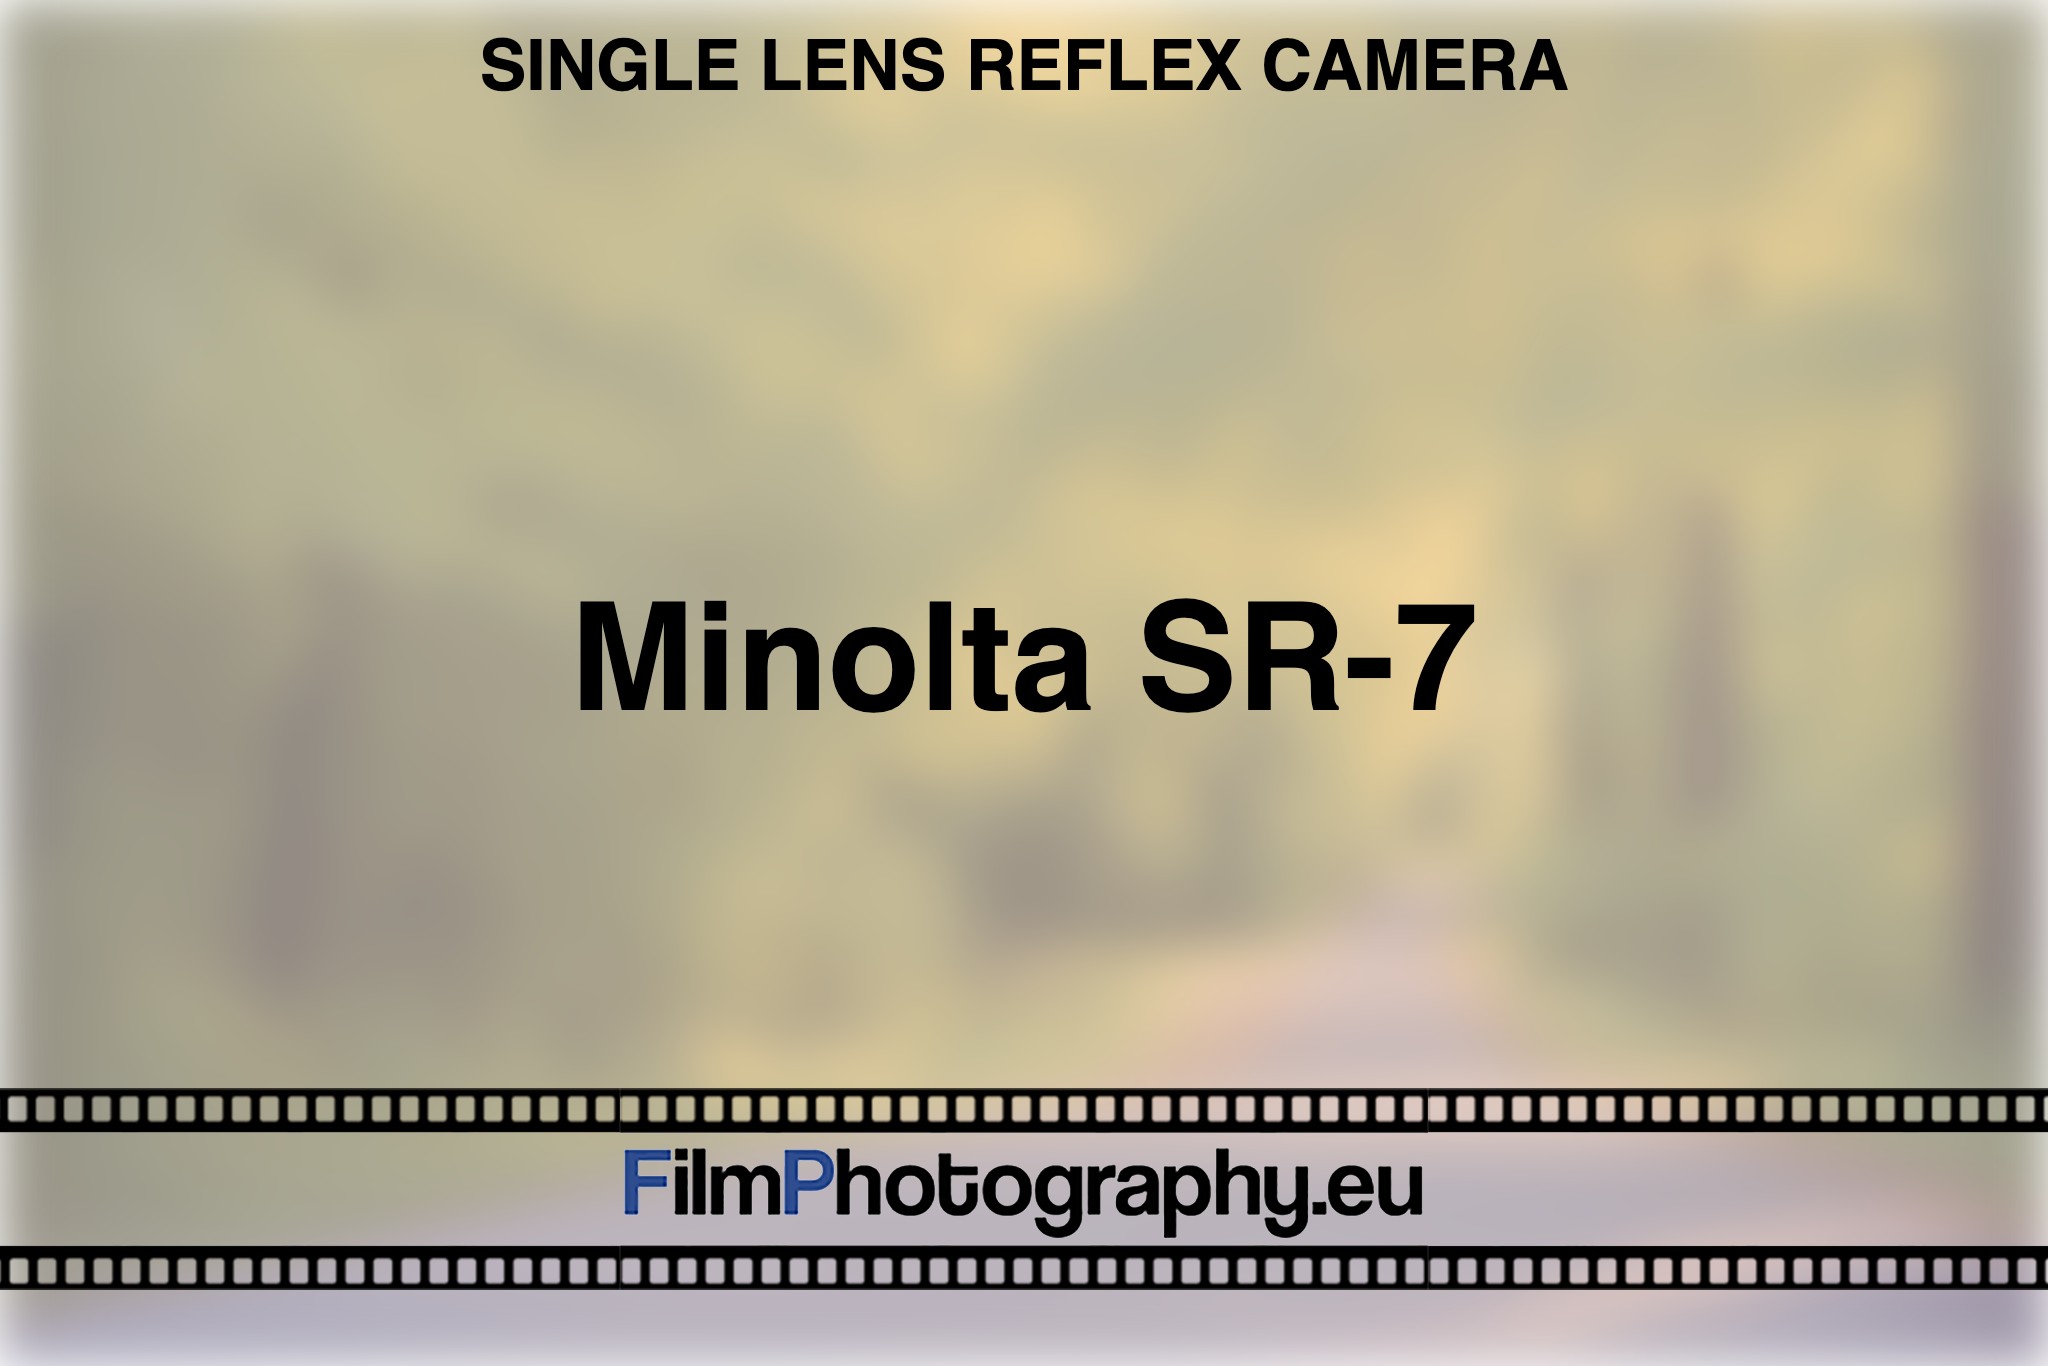 minolta-sr-7-single-lens-reflex-camera-bnv